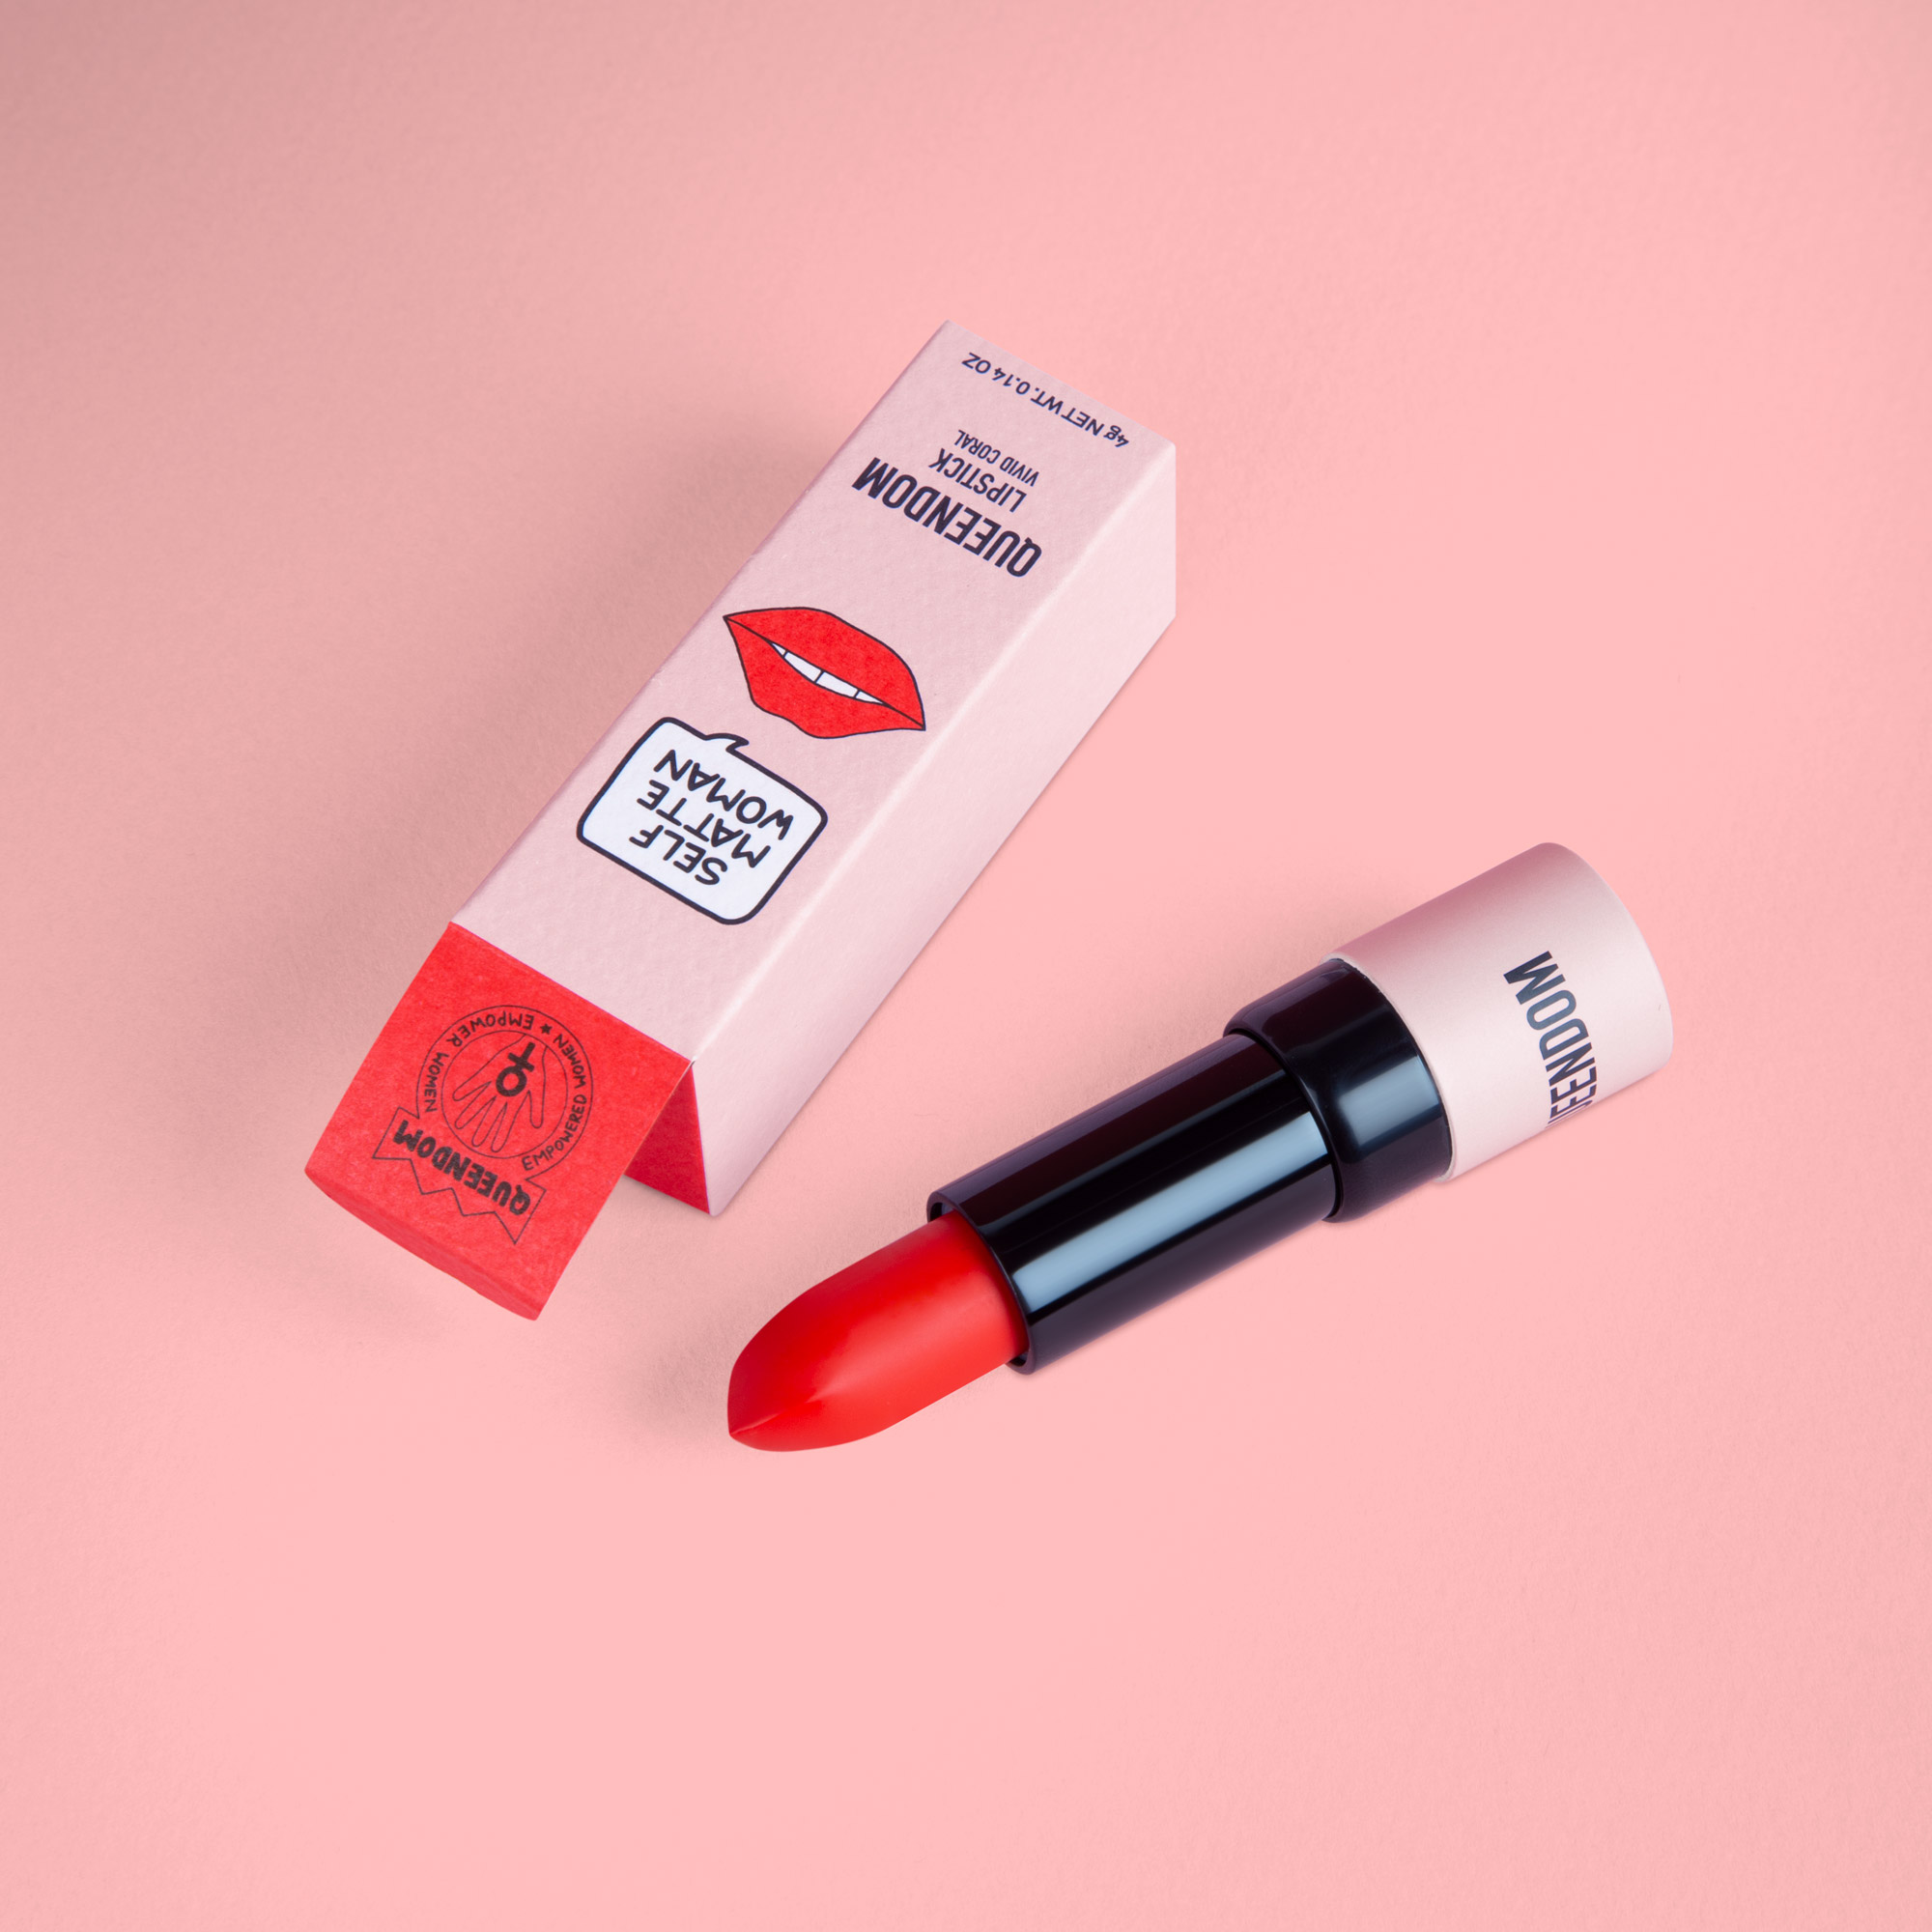 Queendom lipstick packaging design